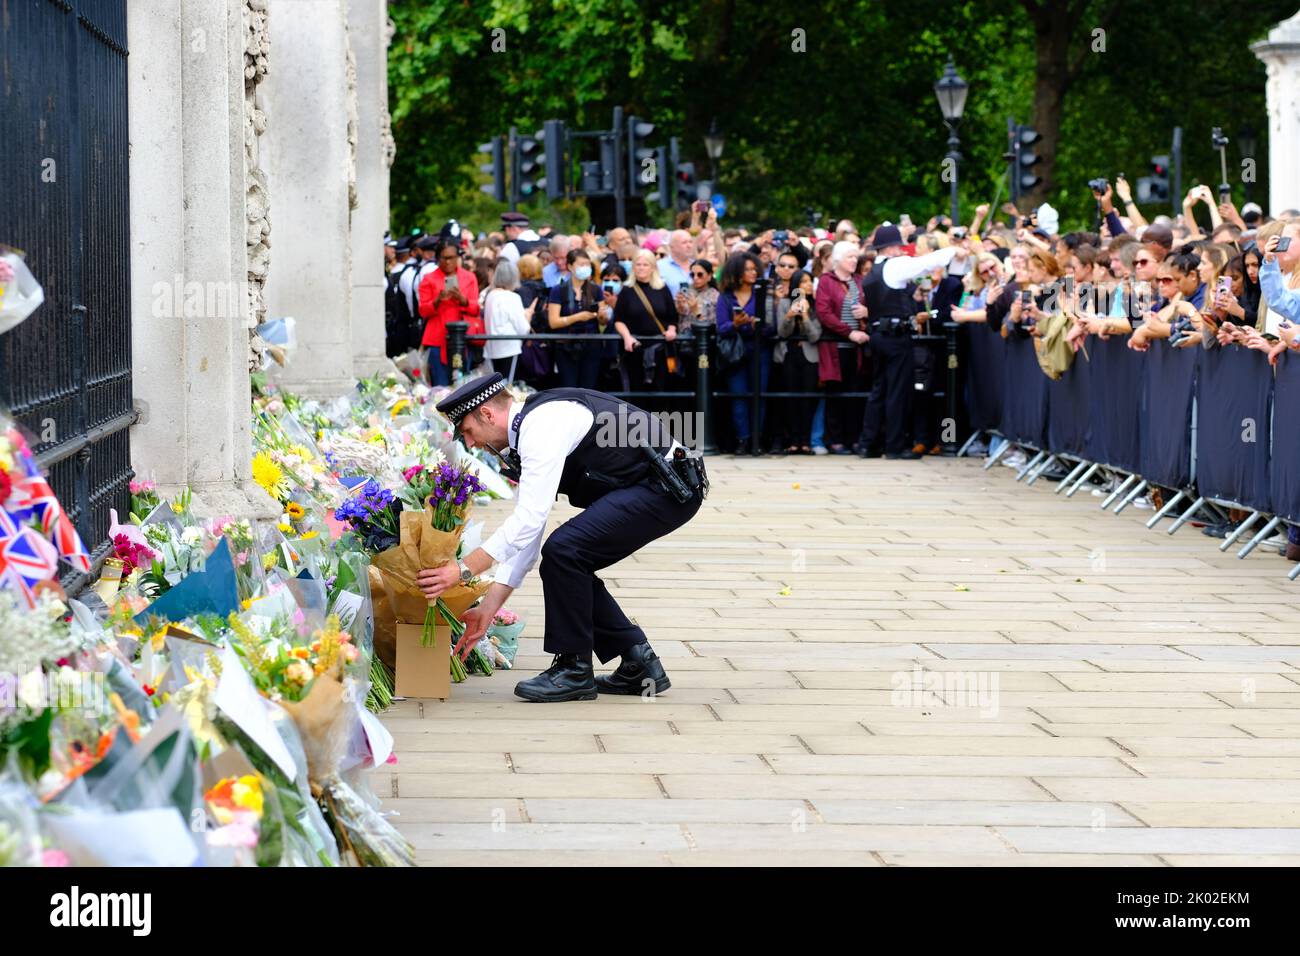 Buckingham Palace, Londres, Royaume-Uni – vendredi 9th septembre 2022 – Un policier dépose des fleurs transmises par la grande foule devant Buckingham Palace alors que le public pleure la mort de la reine Elizabeth II hier. Photo Steven May / Alamy Live News Banque D'Images